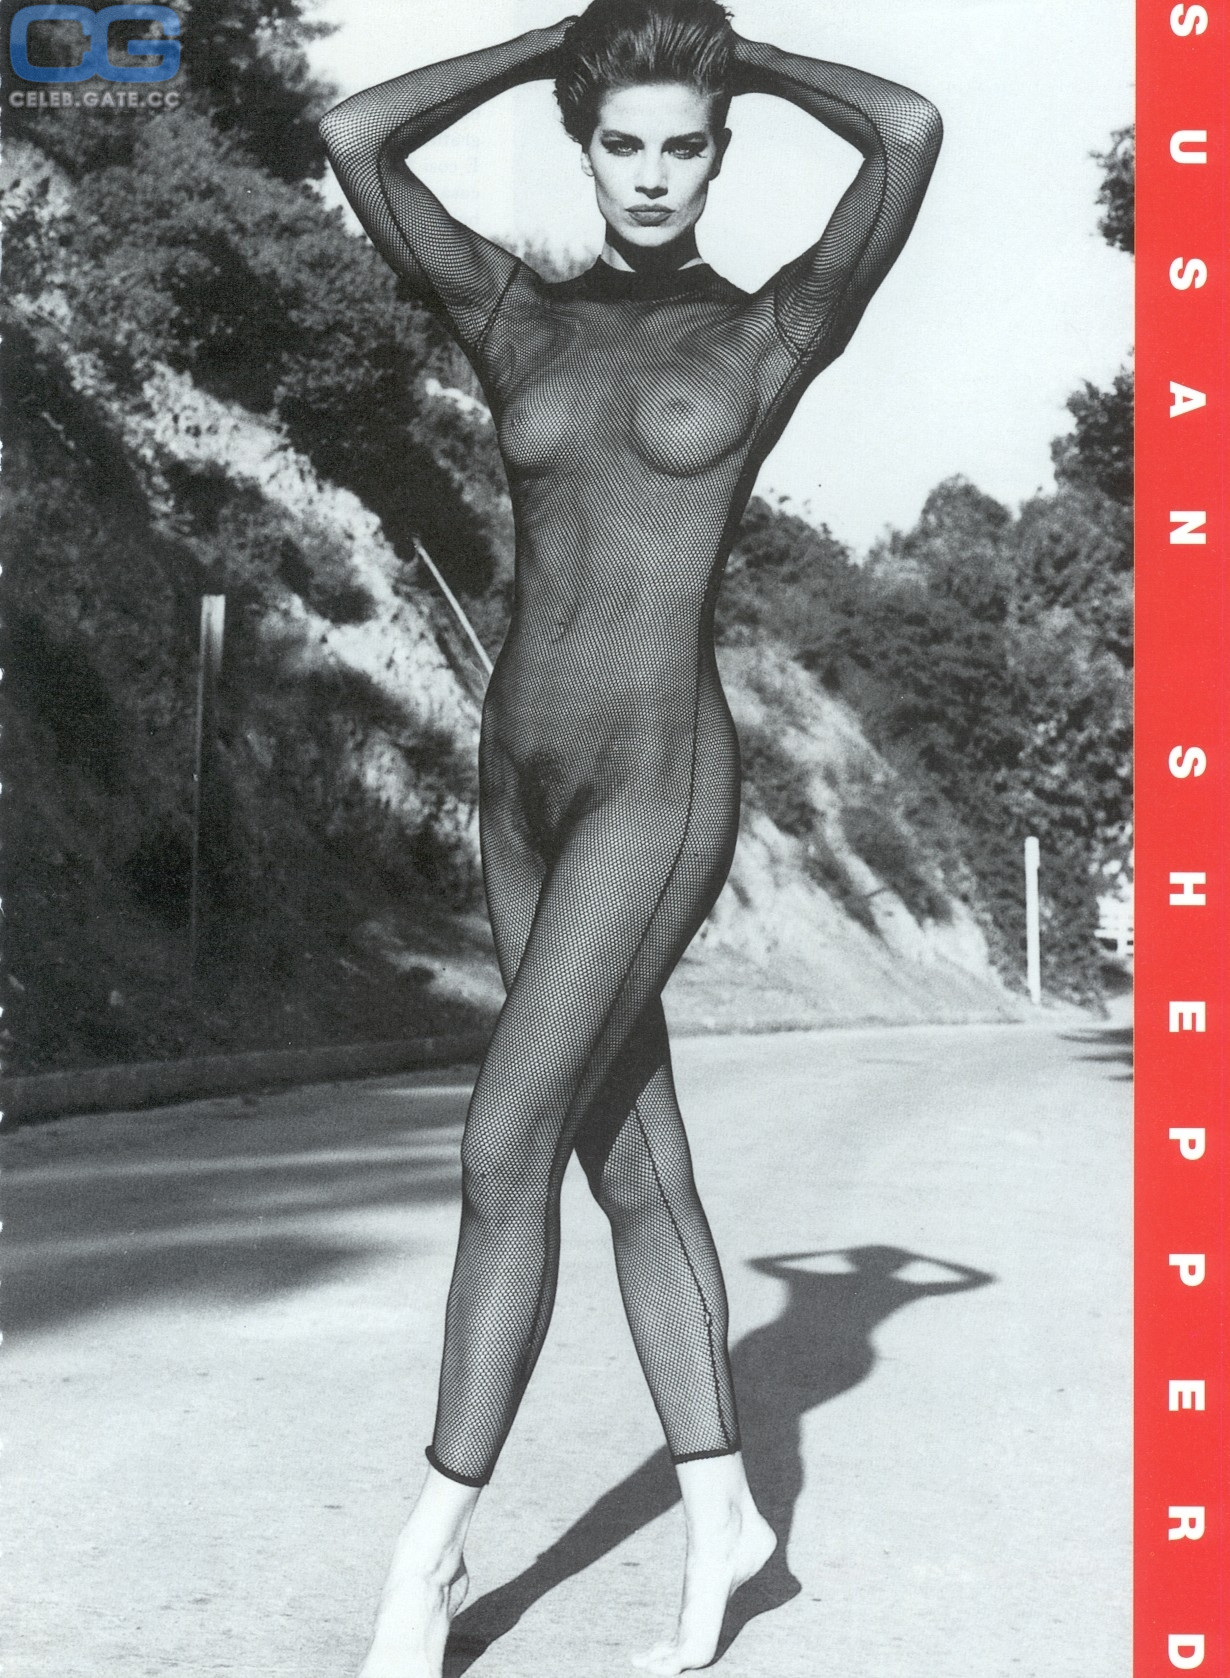 Terry farrell nude photos